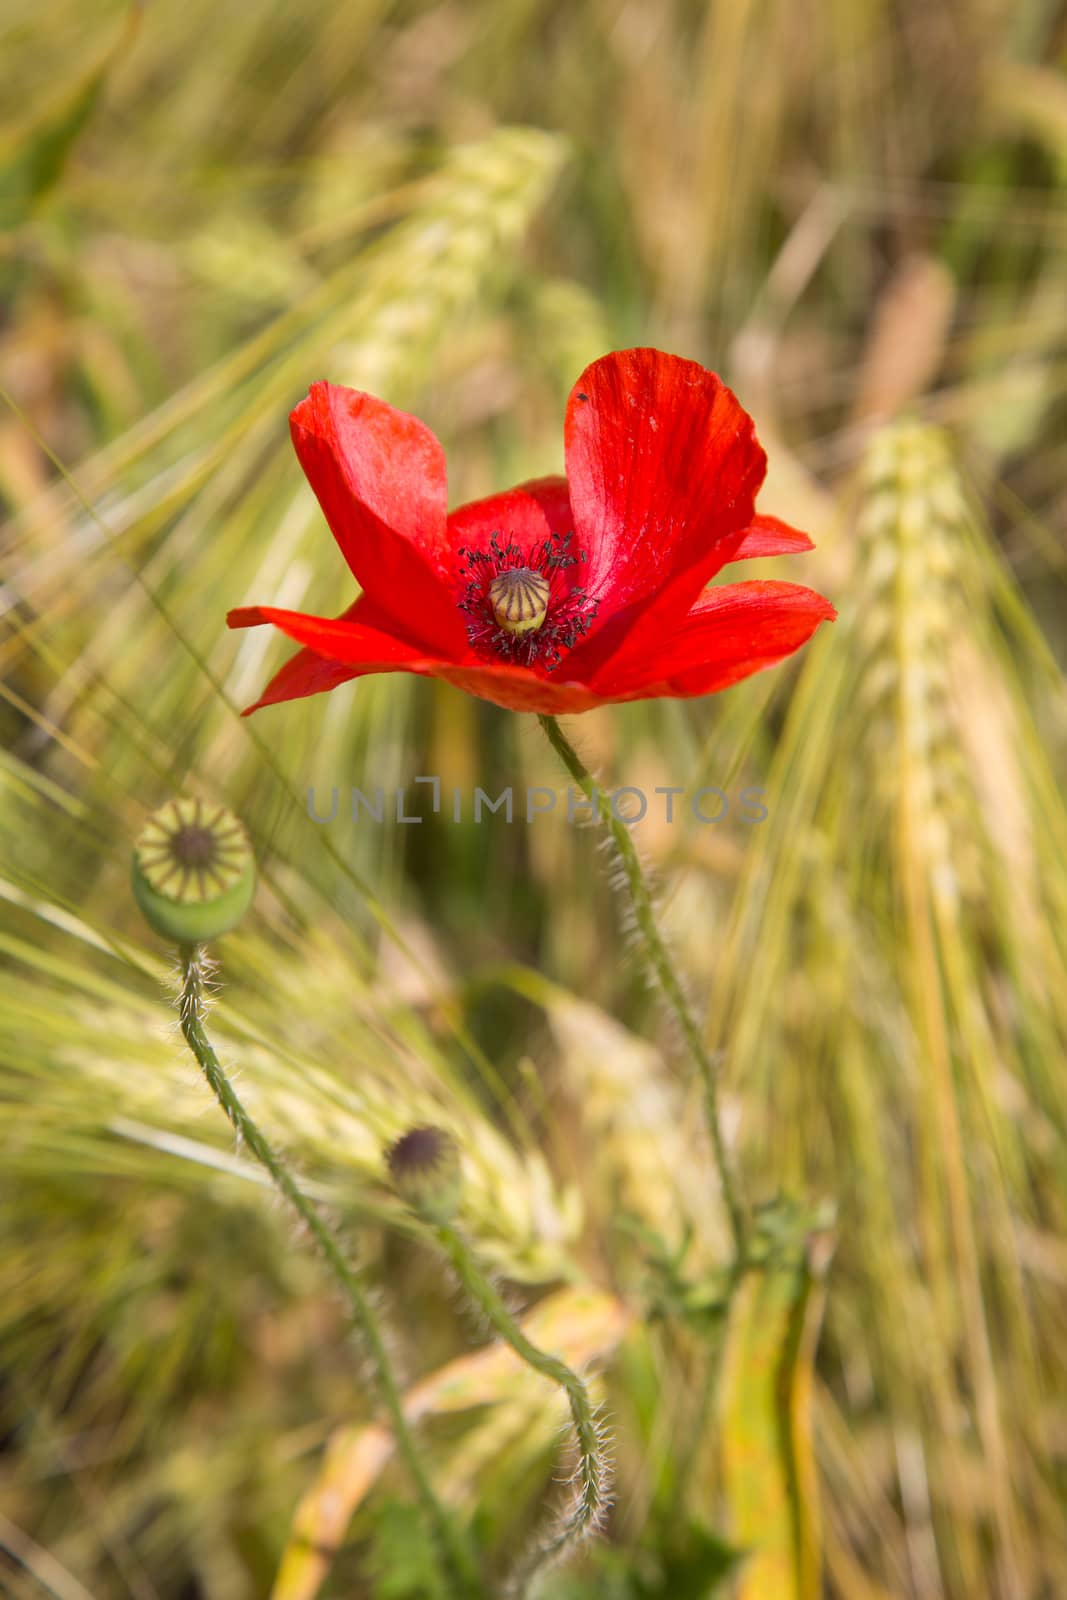 One beautiful red poppy wildflower in a wheat field